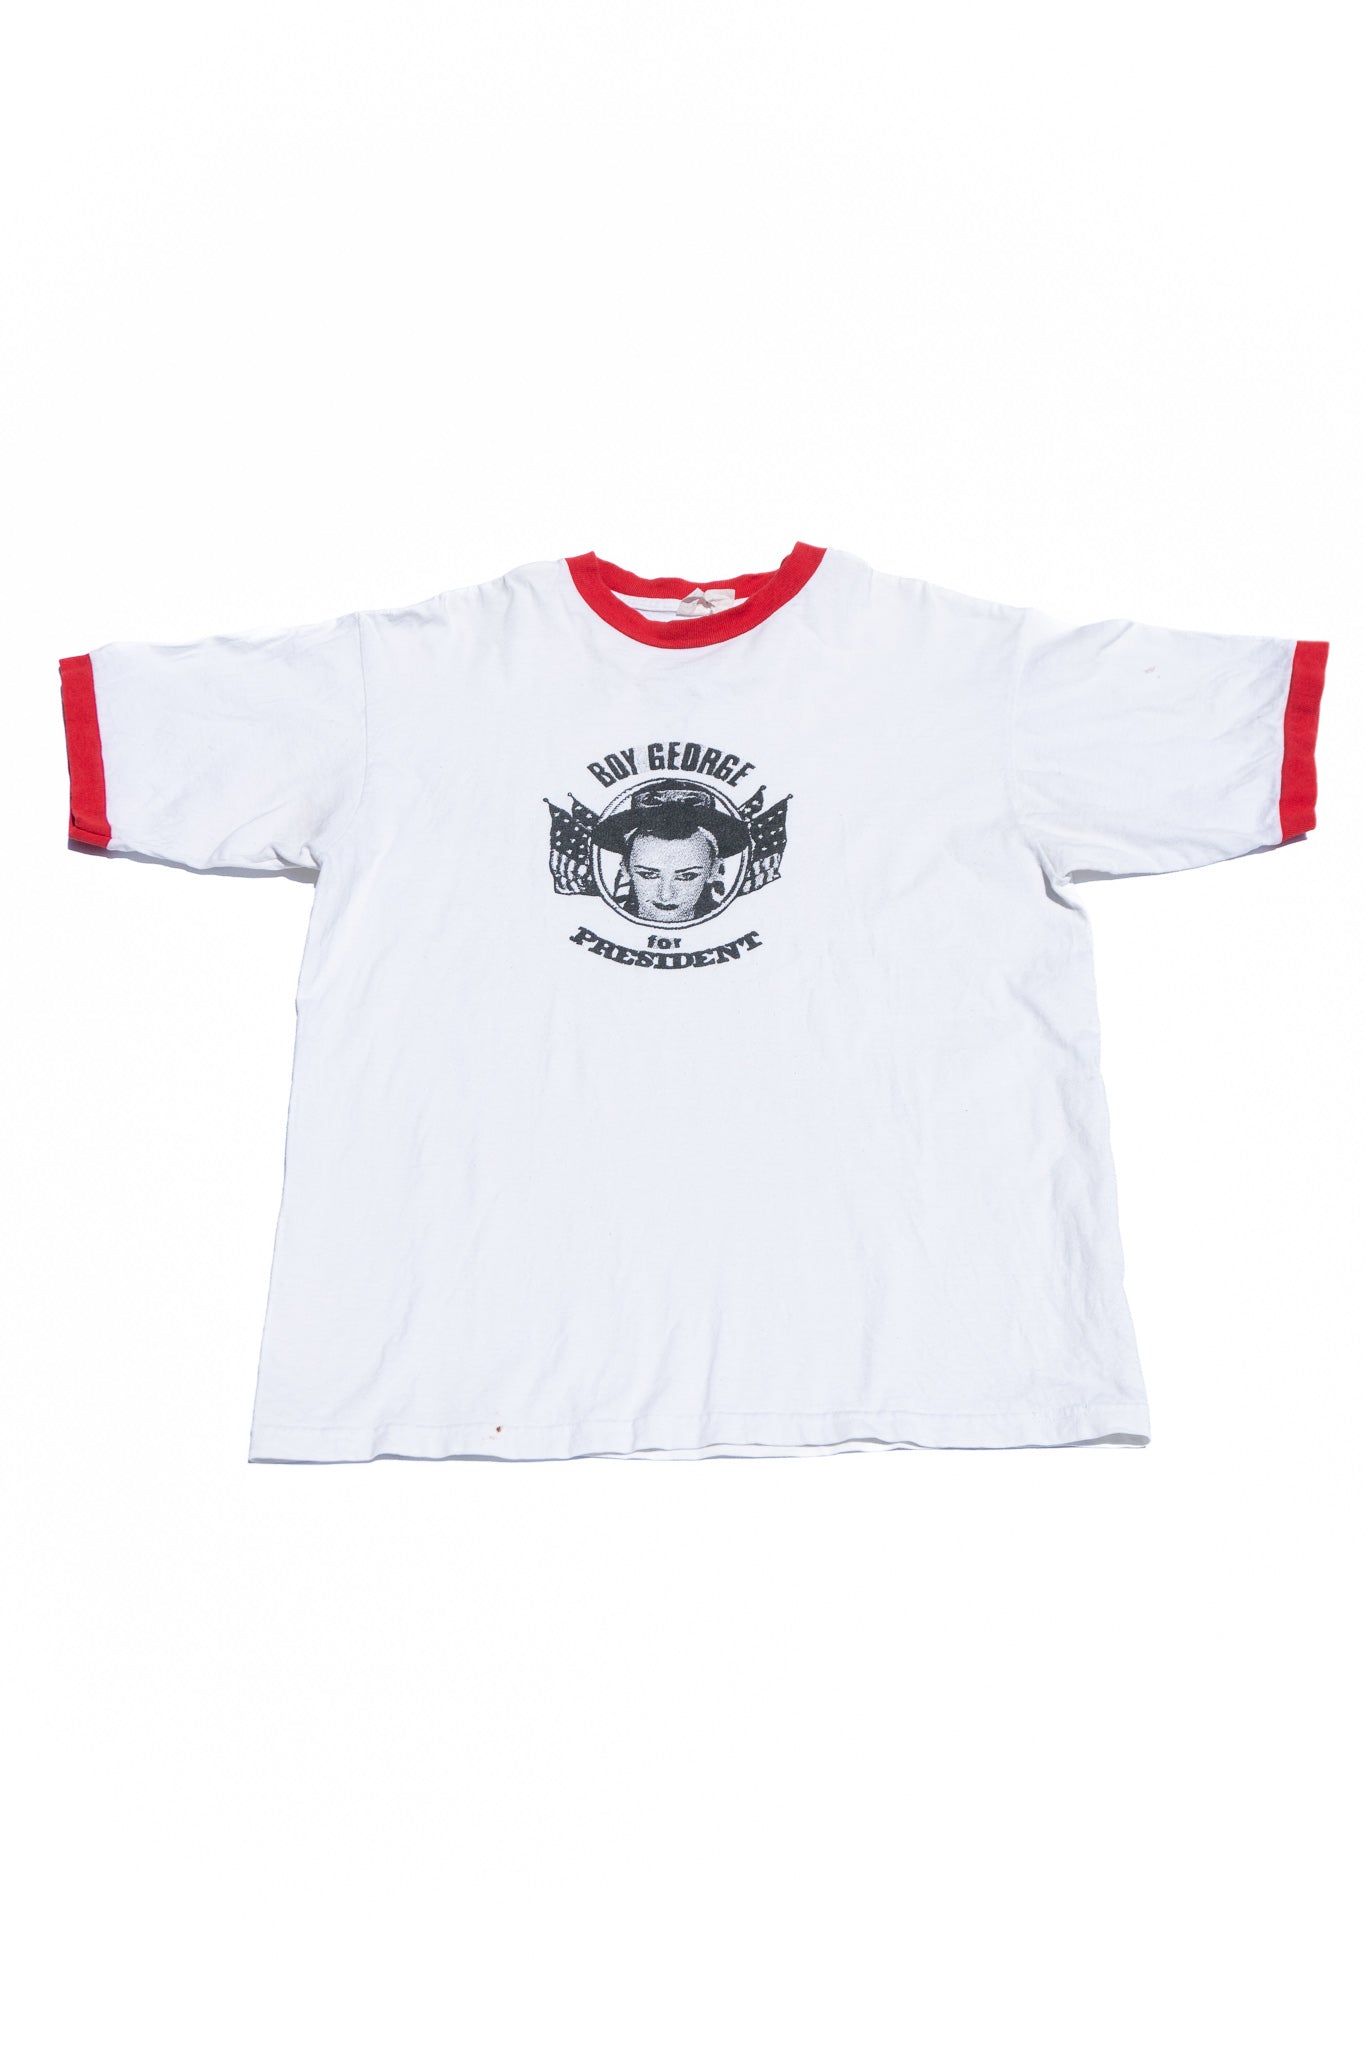 "BOY GEORGE for President" Ringer T-shirt